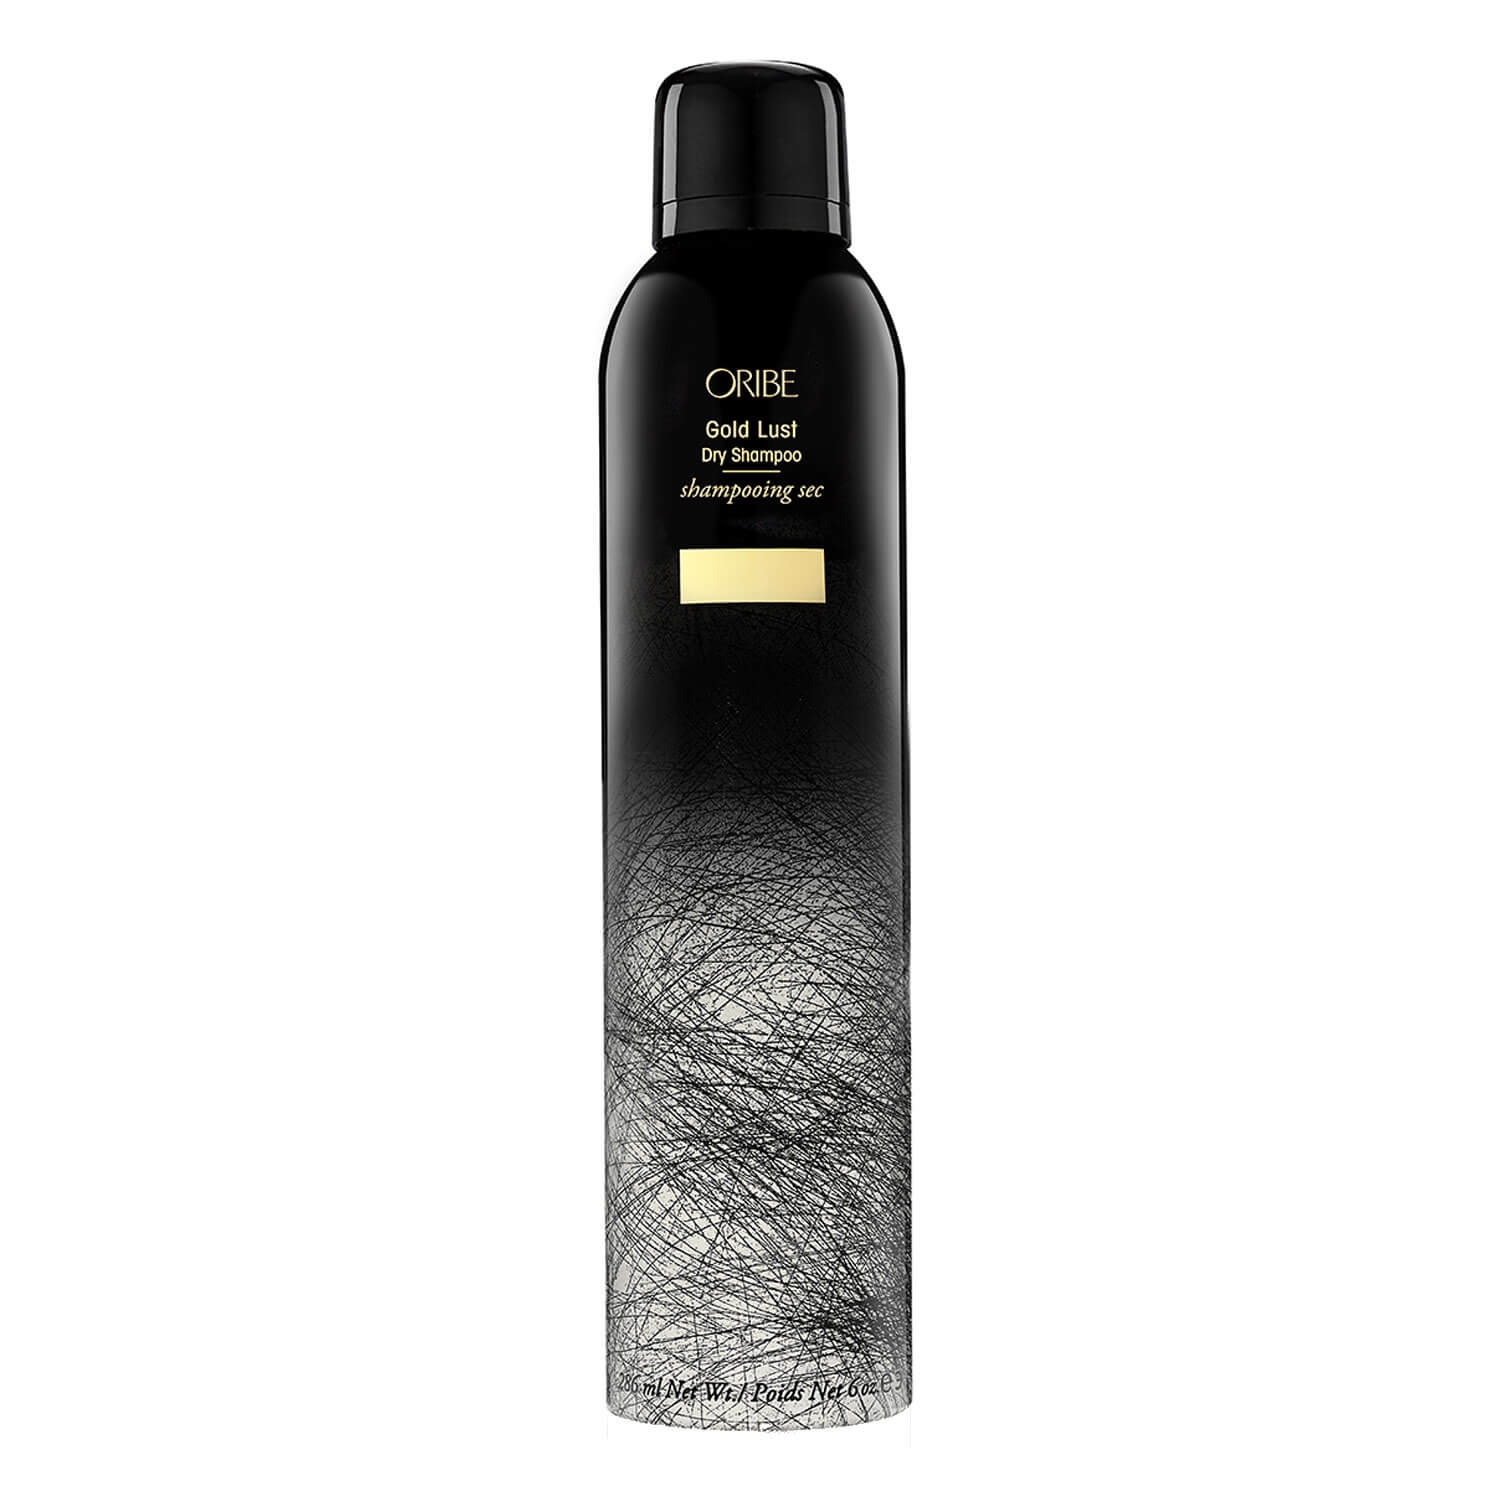 Produktbild von Oribe Care - Gold Lust Dry Shampoo